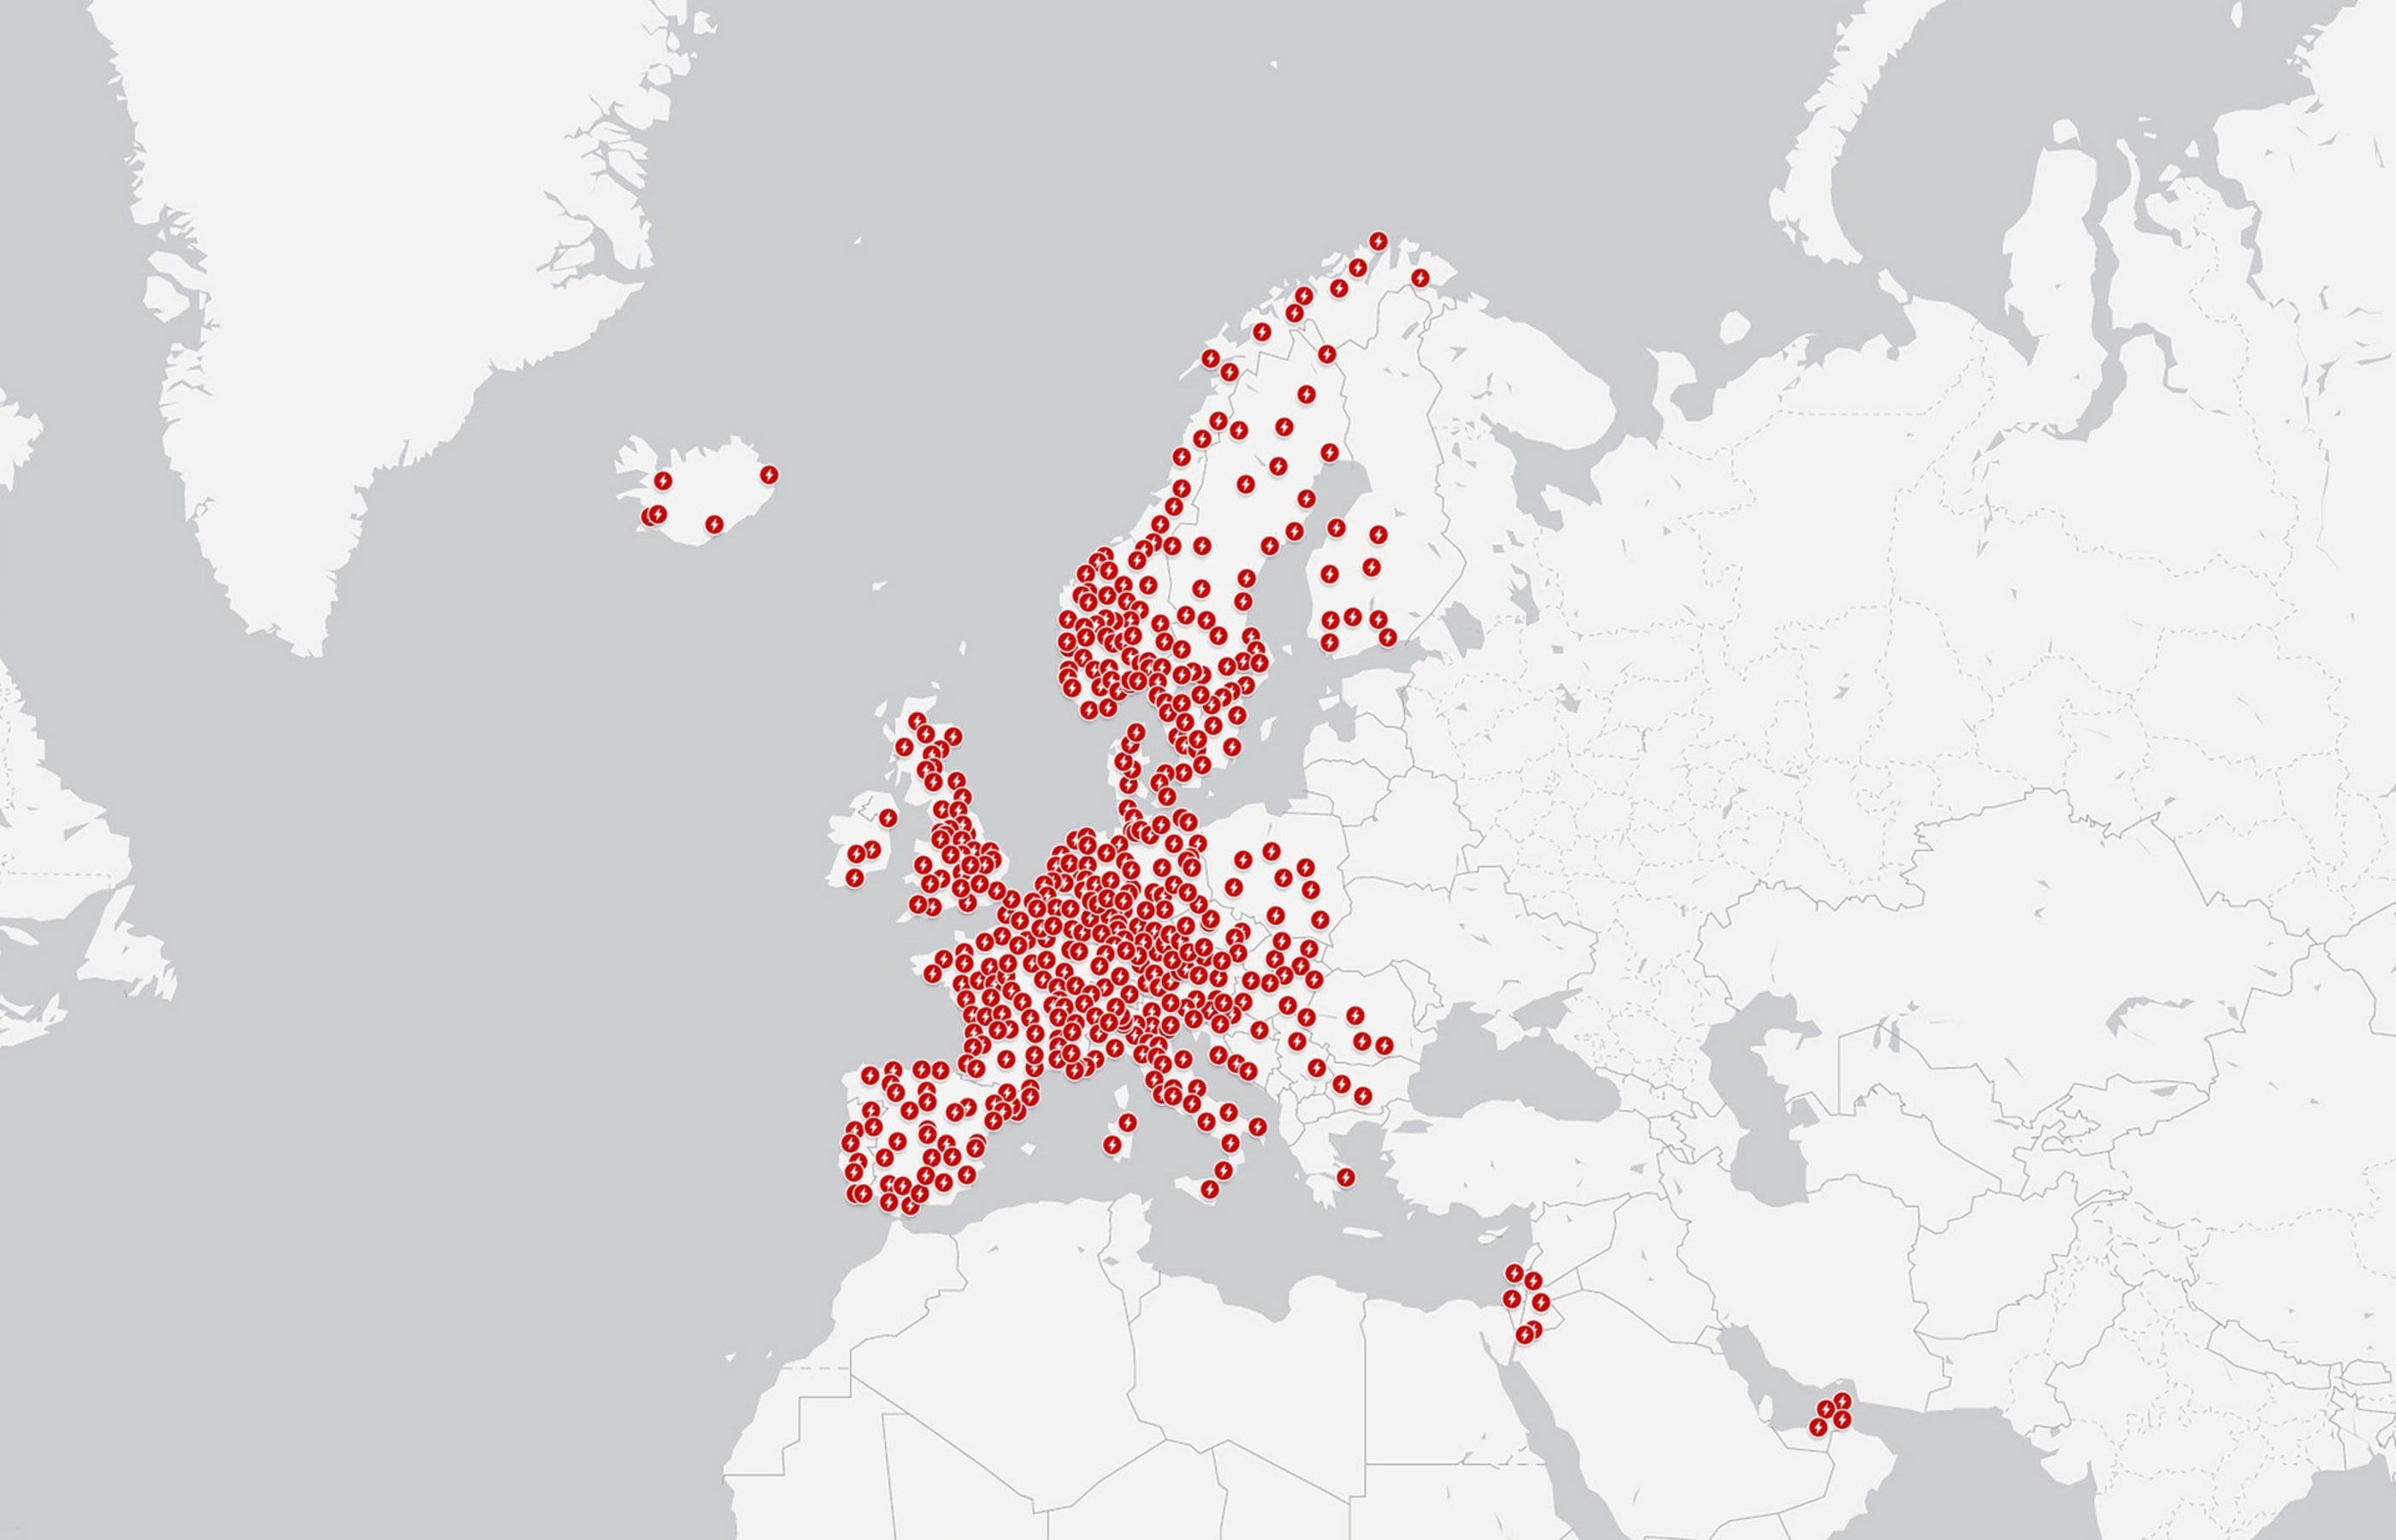 Mapa de supercargadores en Europa y Oriente Medio